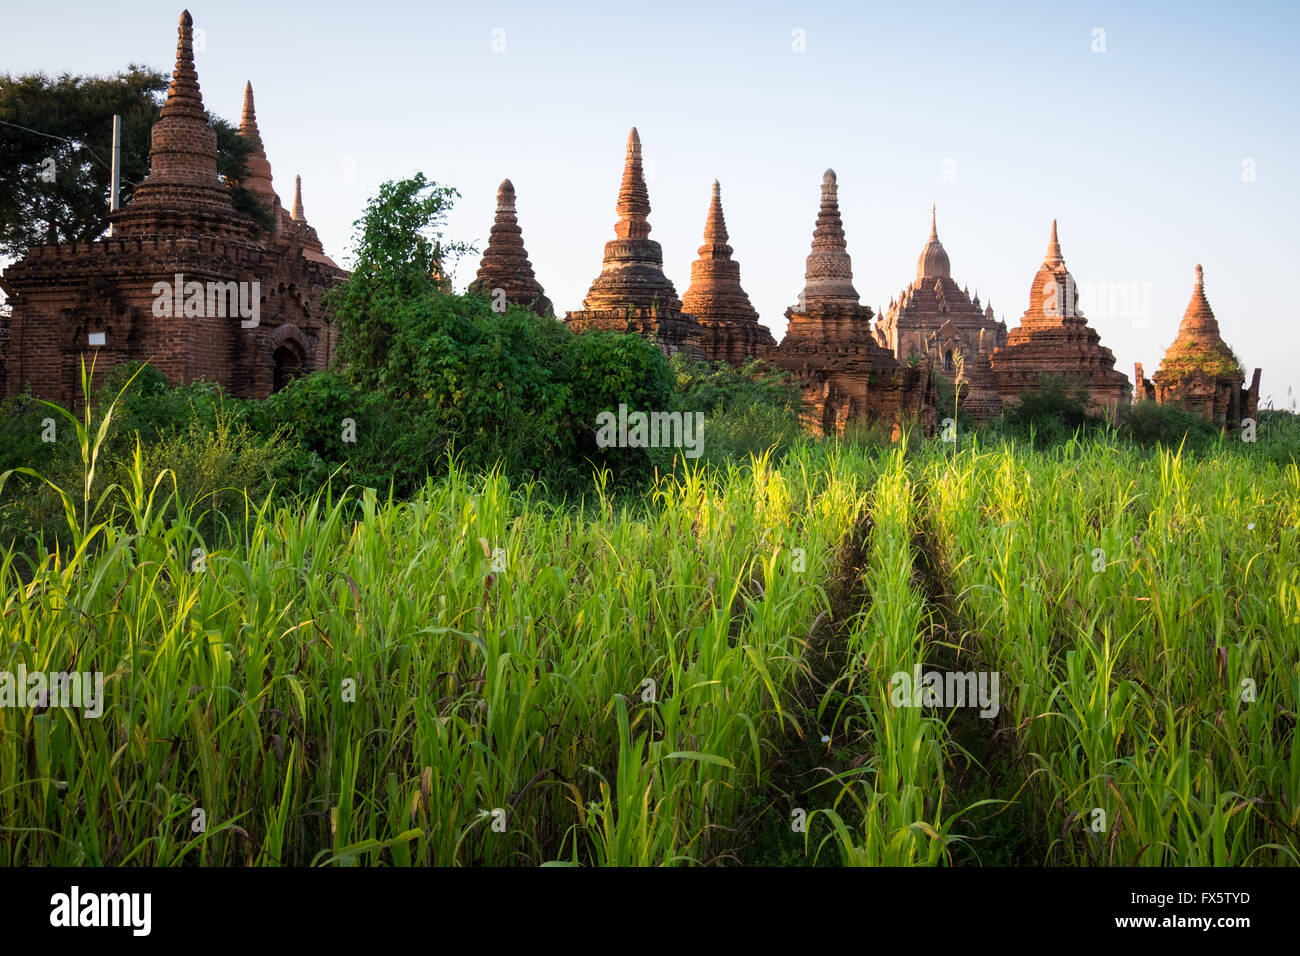 Anciens temples près de champs de maïs dans la région de Bagan, Myanmar Banque D'Images